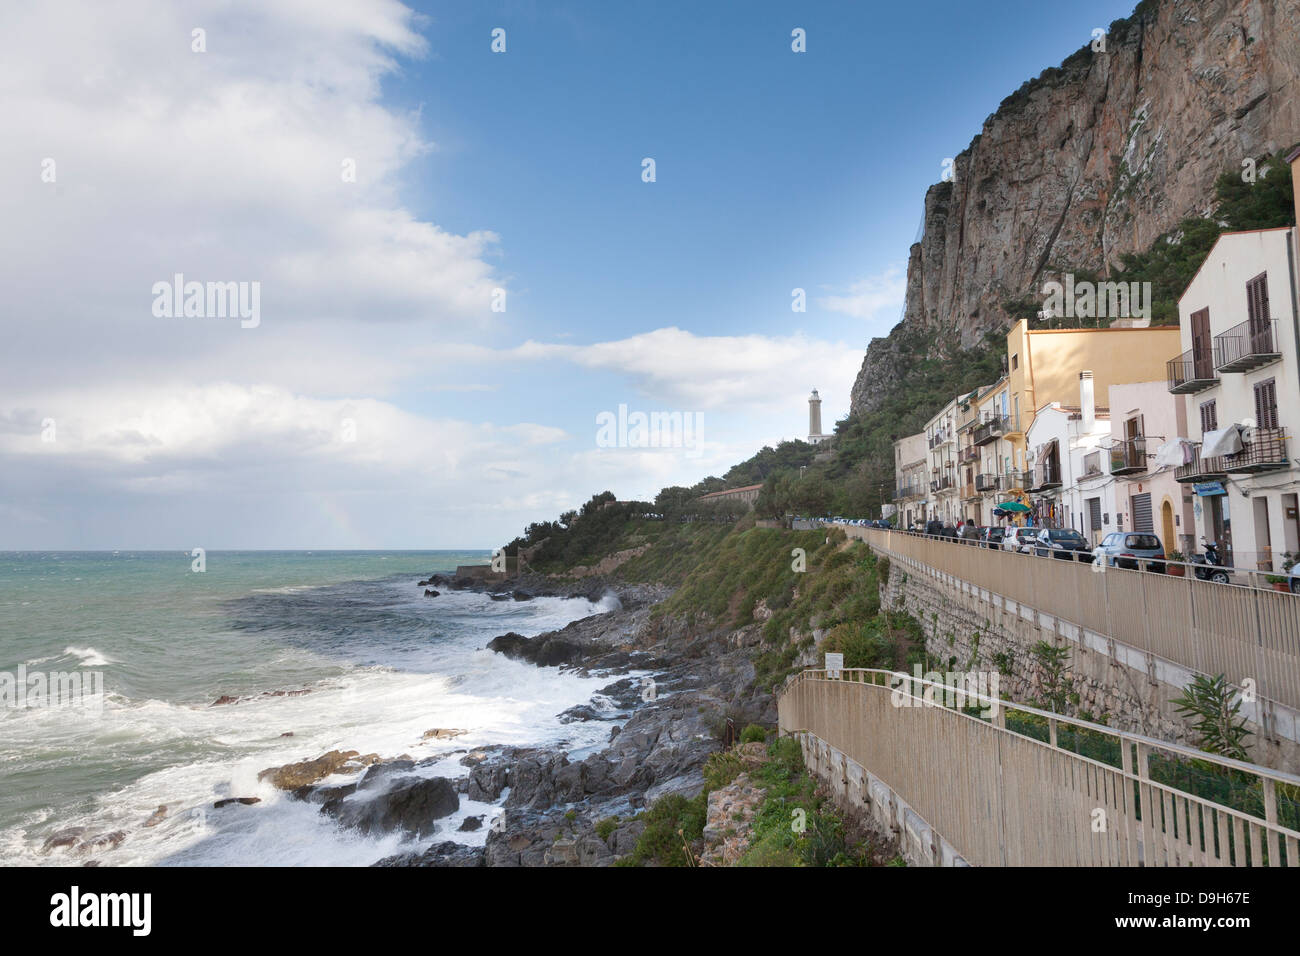 Lighthouse and Tyrrhenian Sea, Cefalu, Sicily, Italy Stock Photo